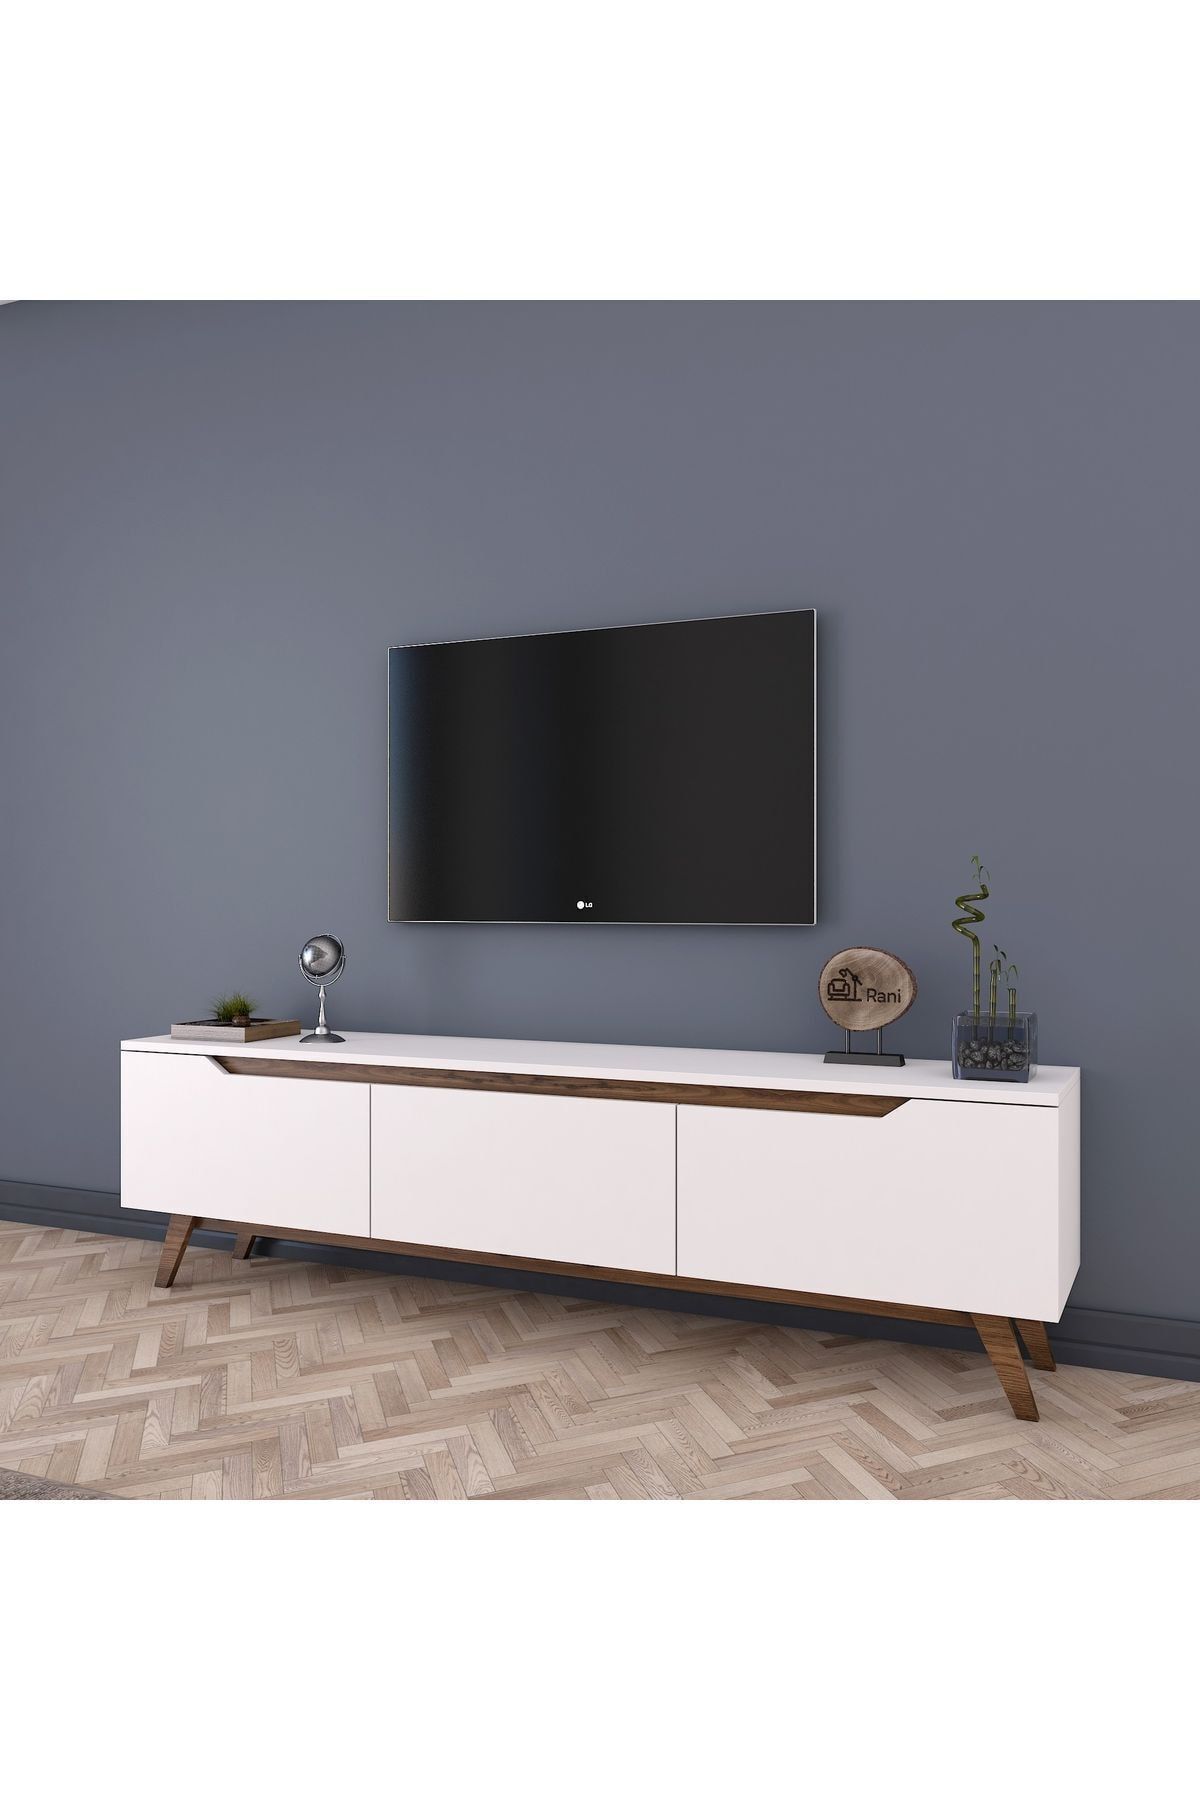 Rani Mobilya Rani D1 Tv Ünitesi Modern Ayaklı Tv Sehpası 180 Cm Beyaz - Minyatür Ceviz